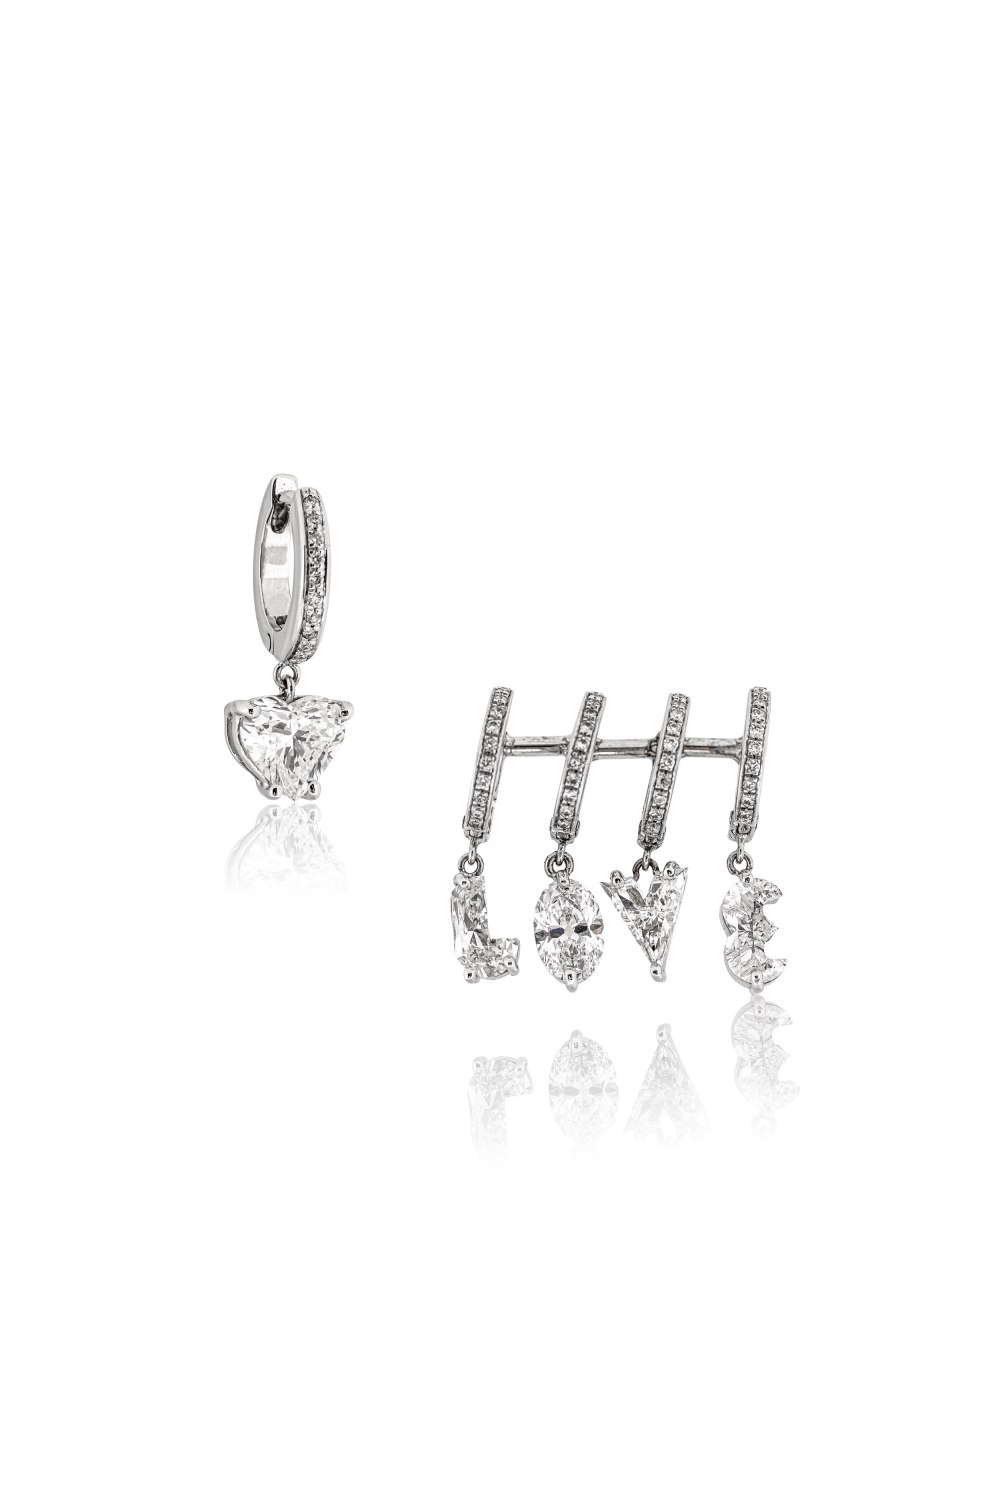 ANASTASIA KESSARIS - Custom Cut Diamond Earrings